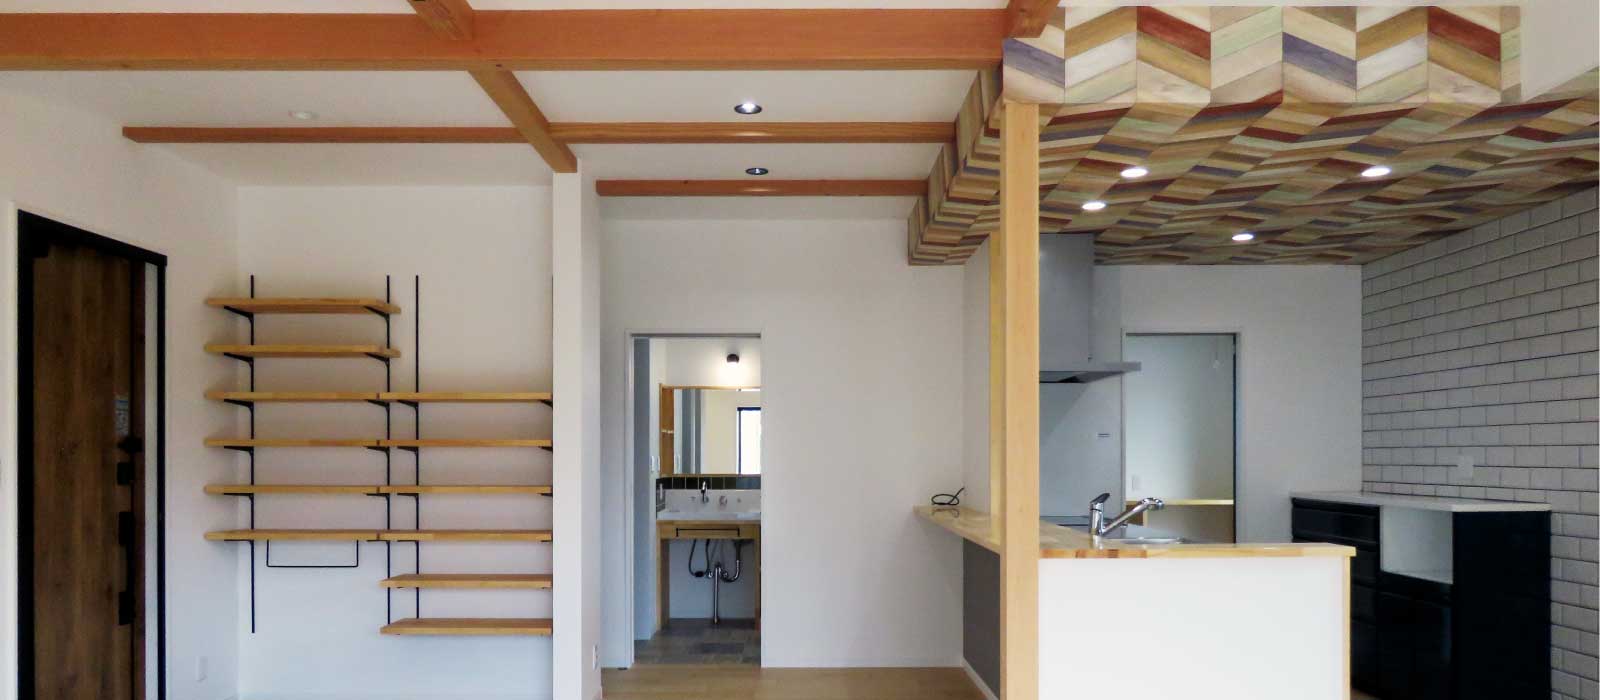 長期優良住宅で建てる自然素材の家完成見学会